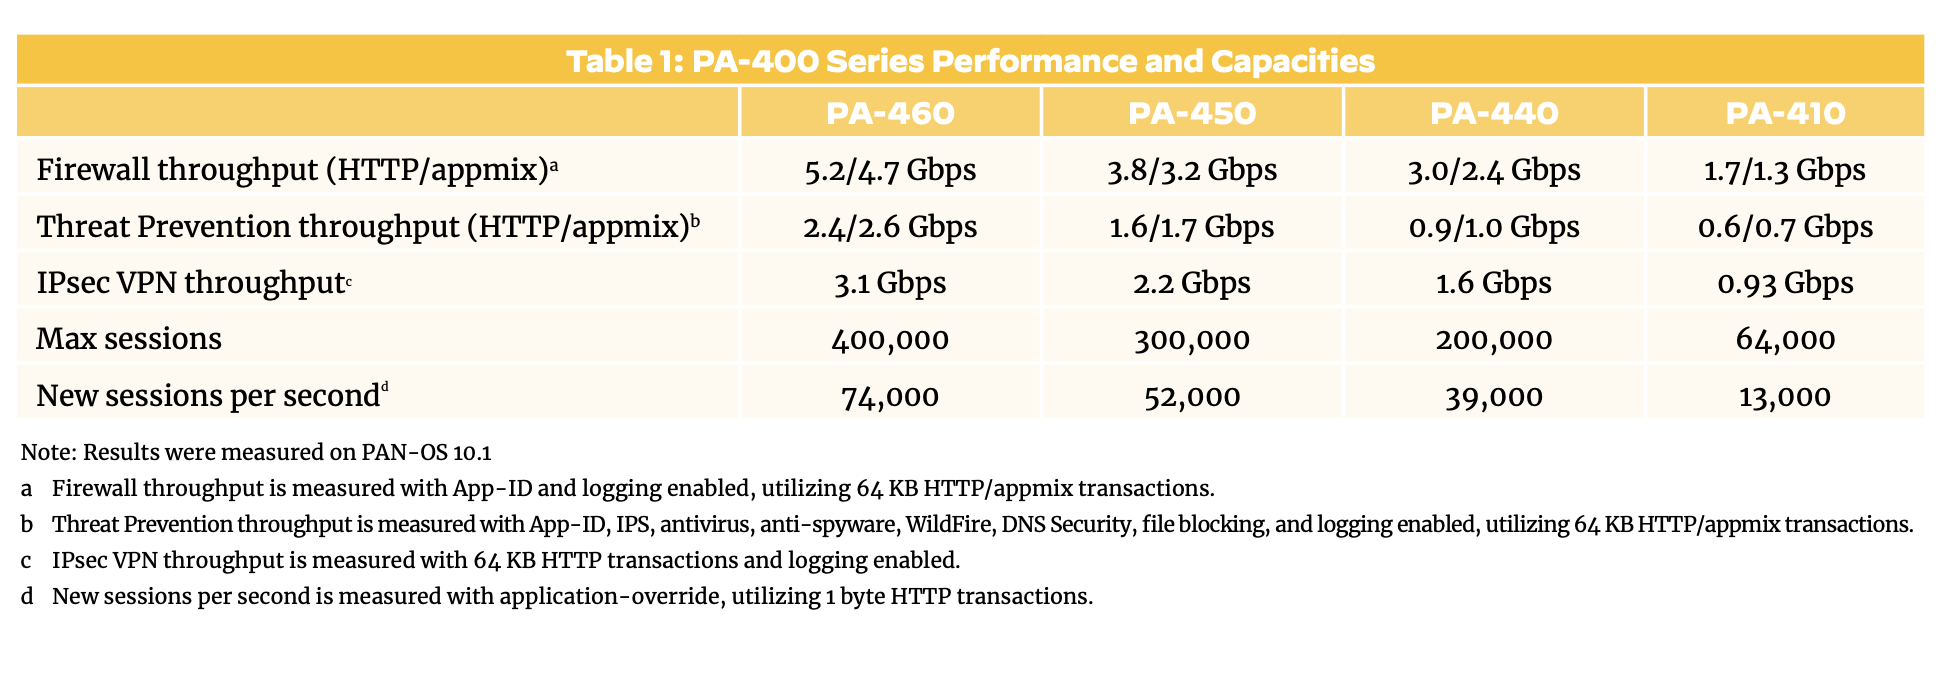 Compare spec PA-400